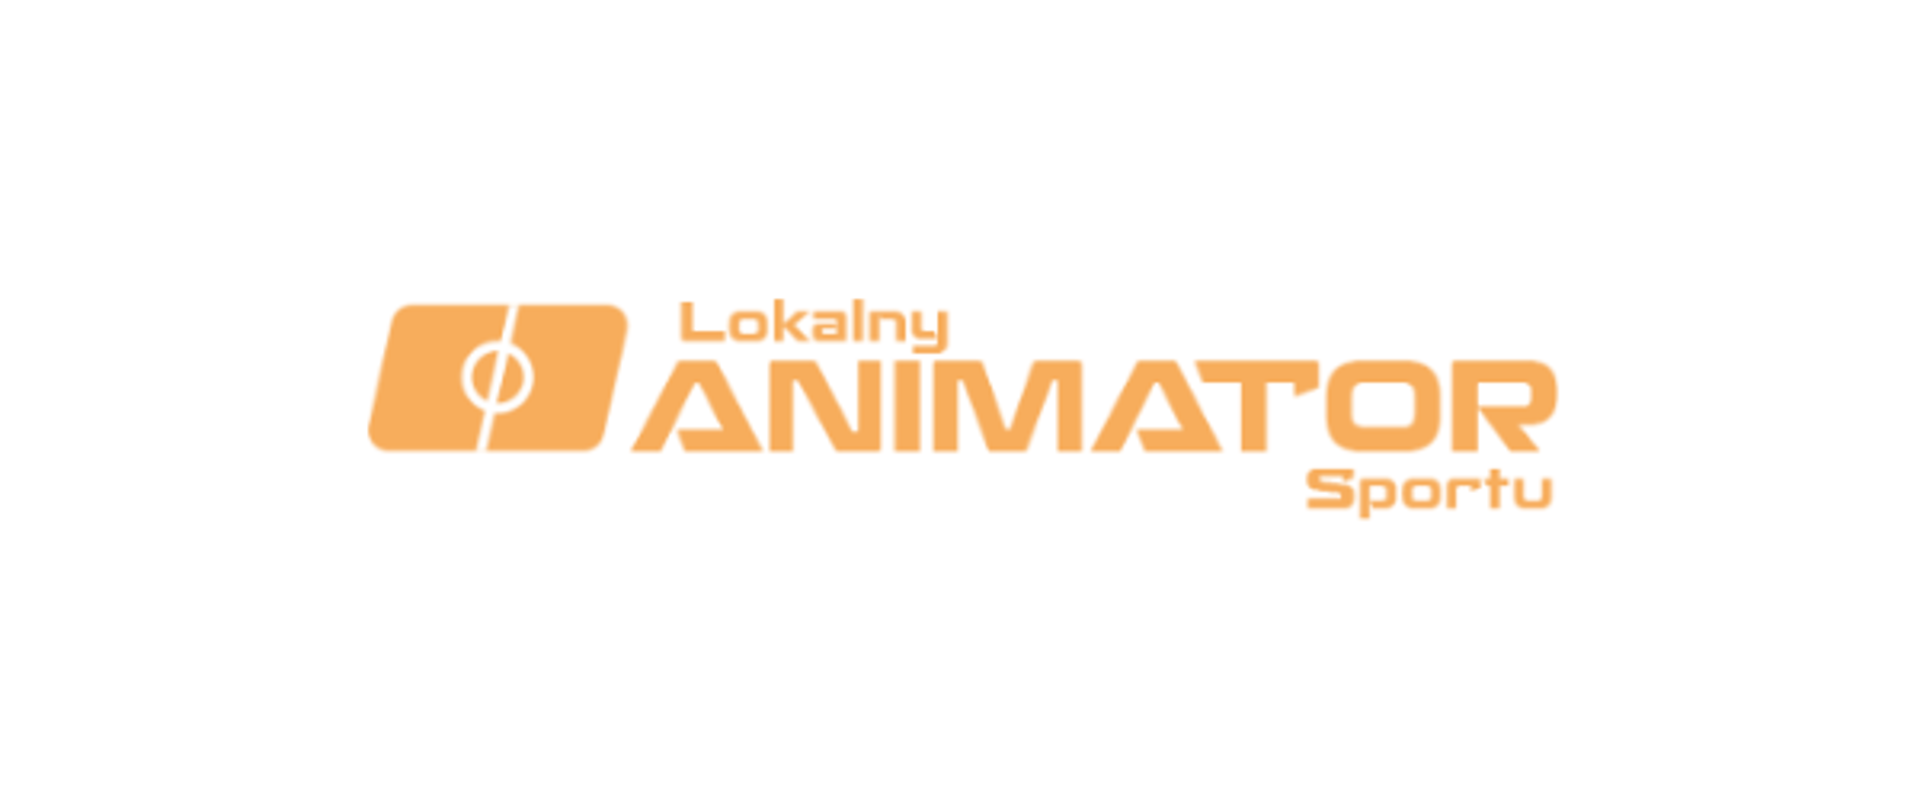 Pomarańczowe logo projektu "Lokalny Animator Sportu" - nazwa projektu oraz stylizowana grafika symbolizująca boisko sportowe